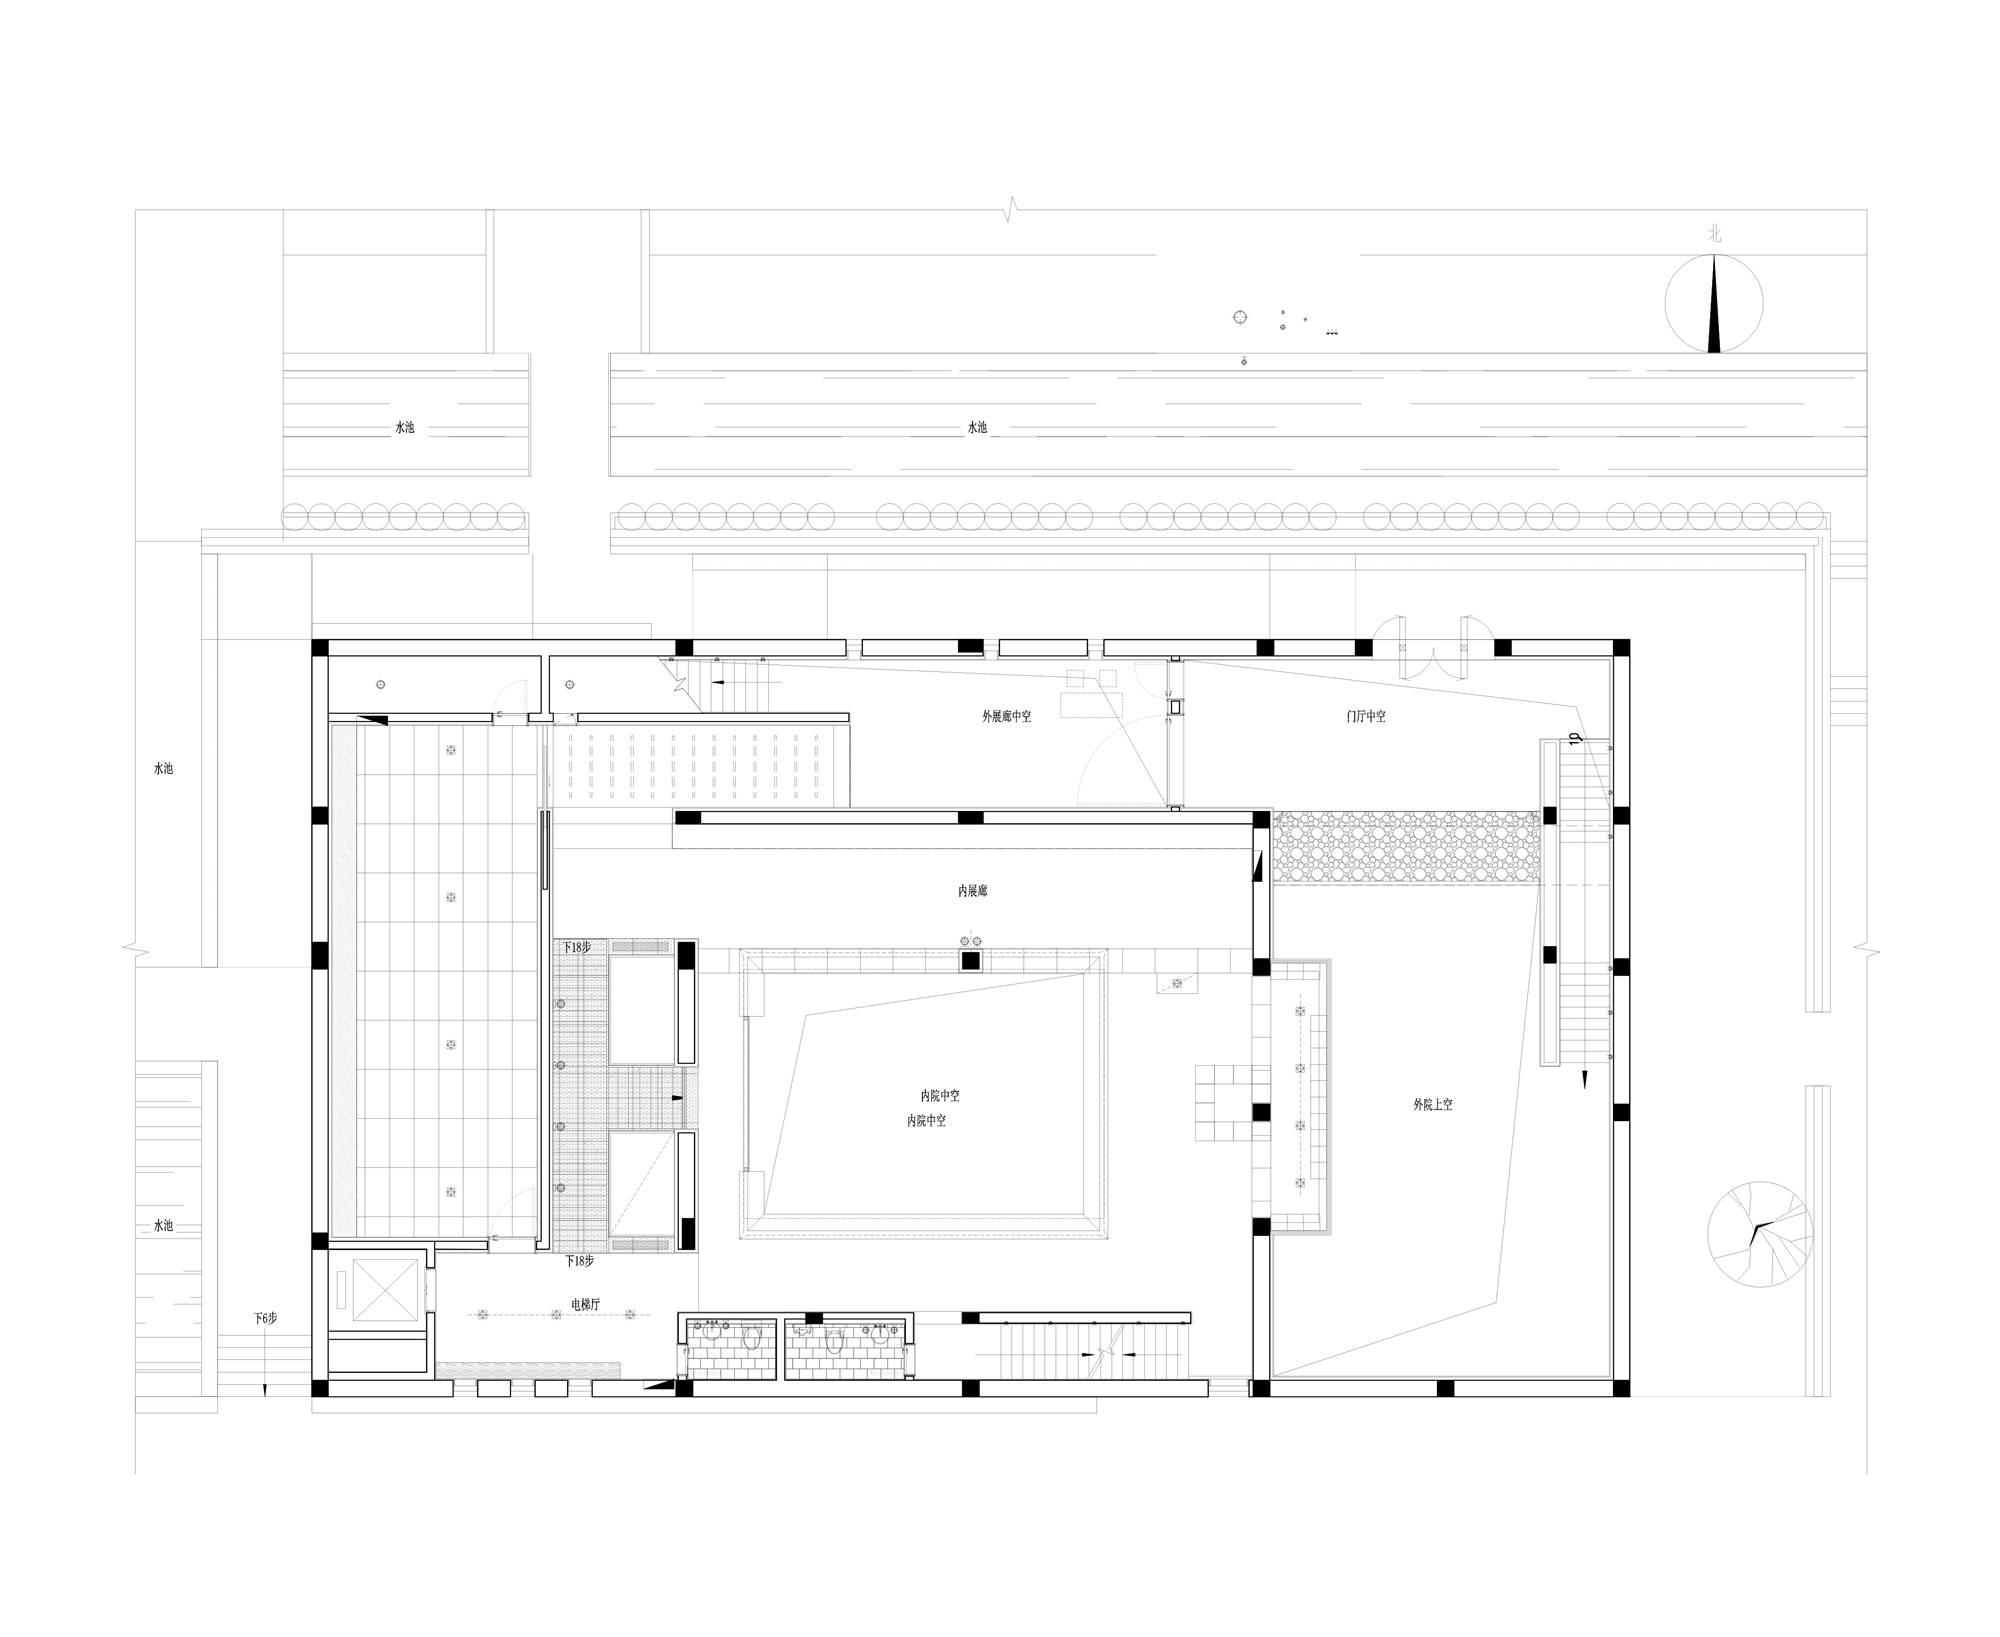 一层平面▲ 二层平面建筑概况▽项目名称:湖北宜昌一二美术馆主馆